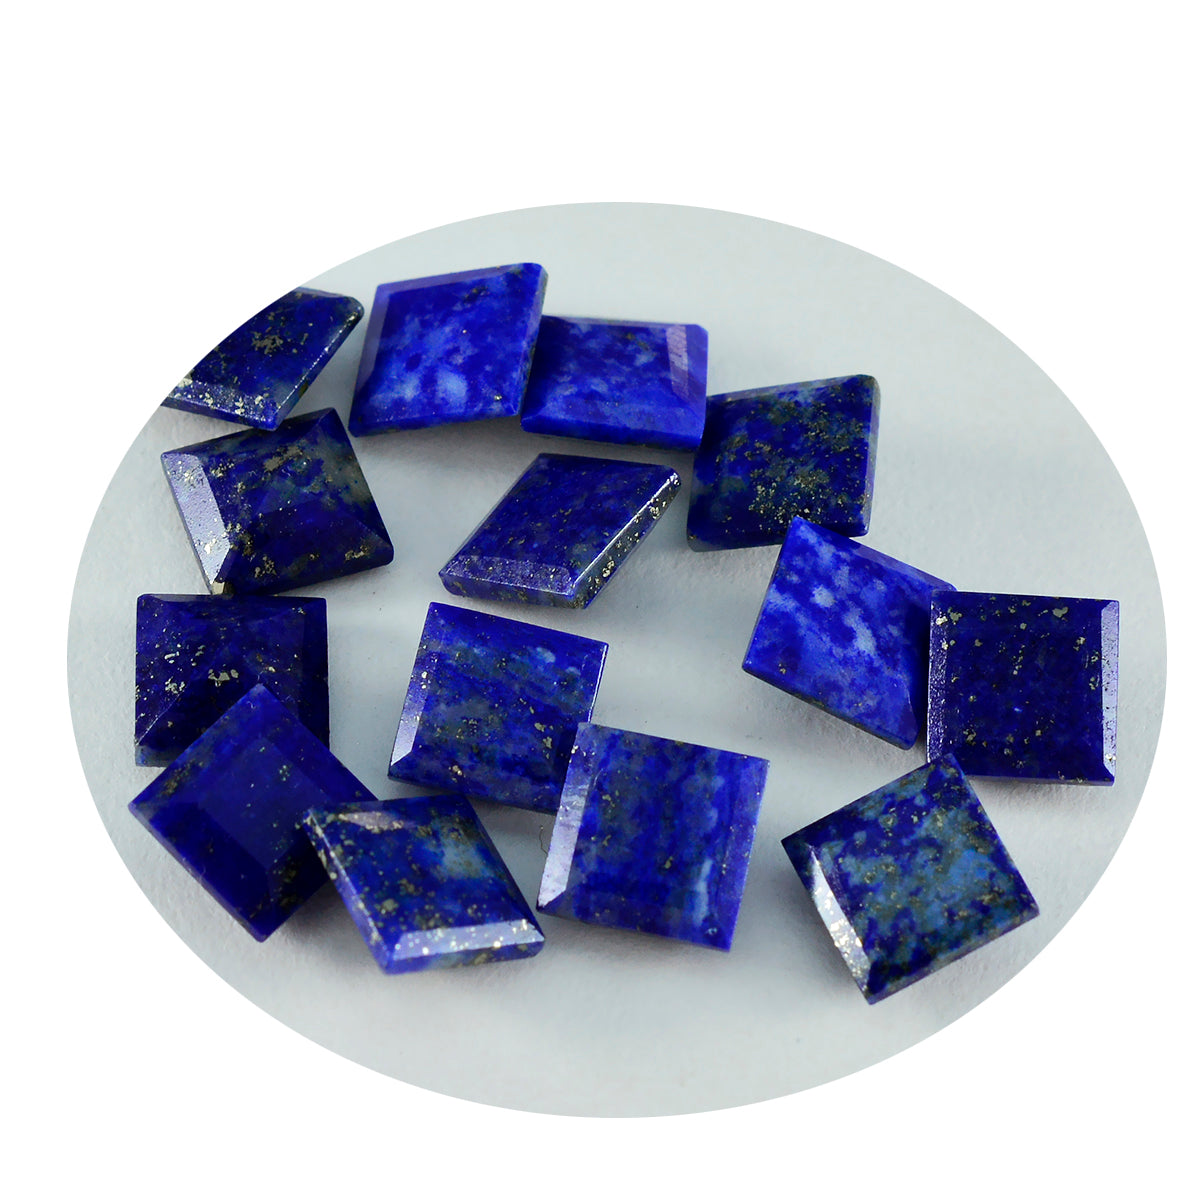 riyogems 1 шт. натуральный синий лазурит ограненный 8x8 мм квадратной формы, красивый качественный камень